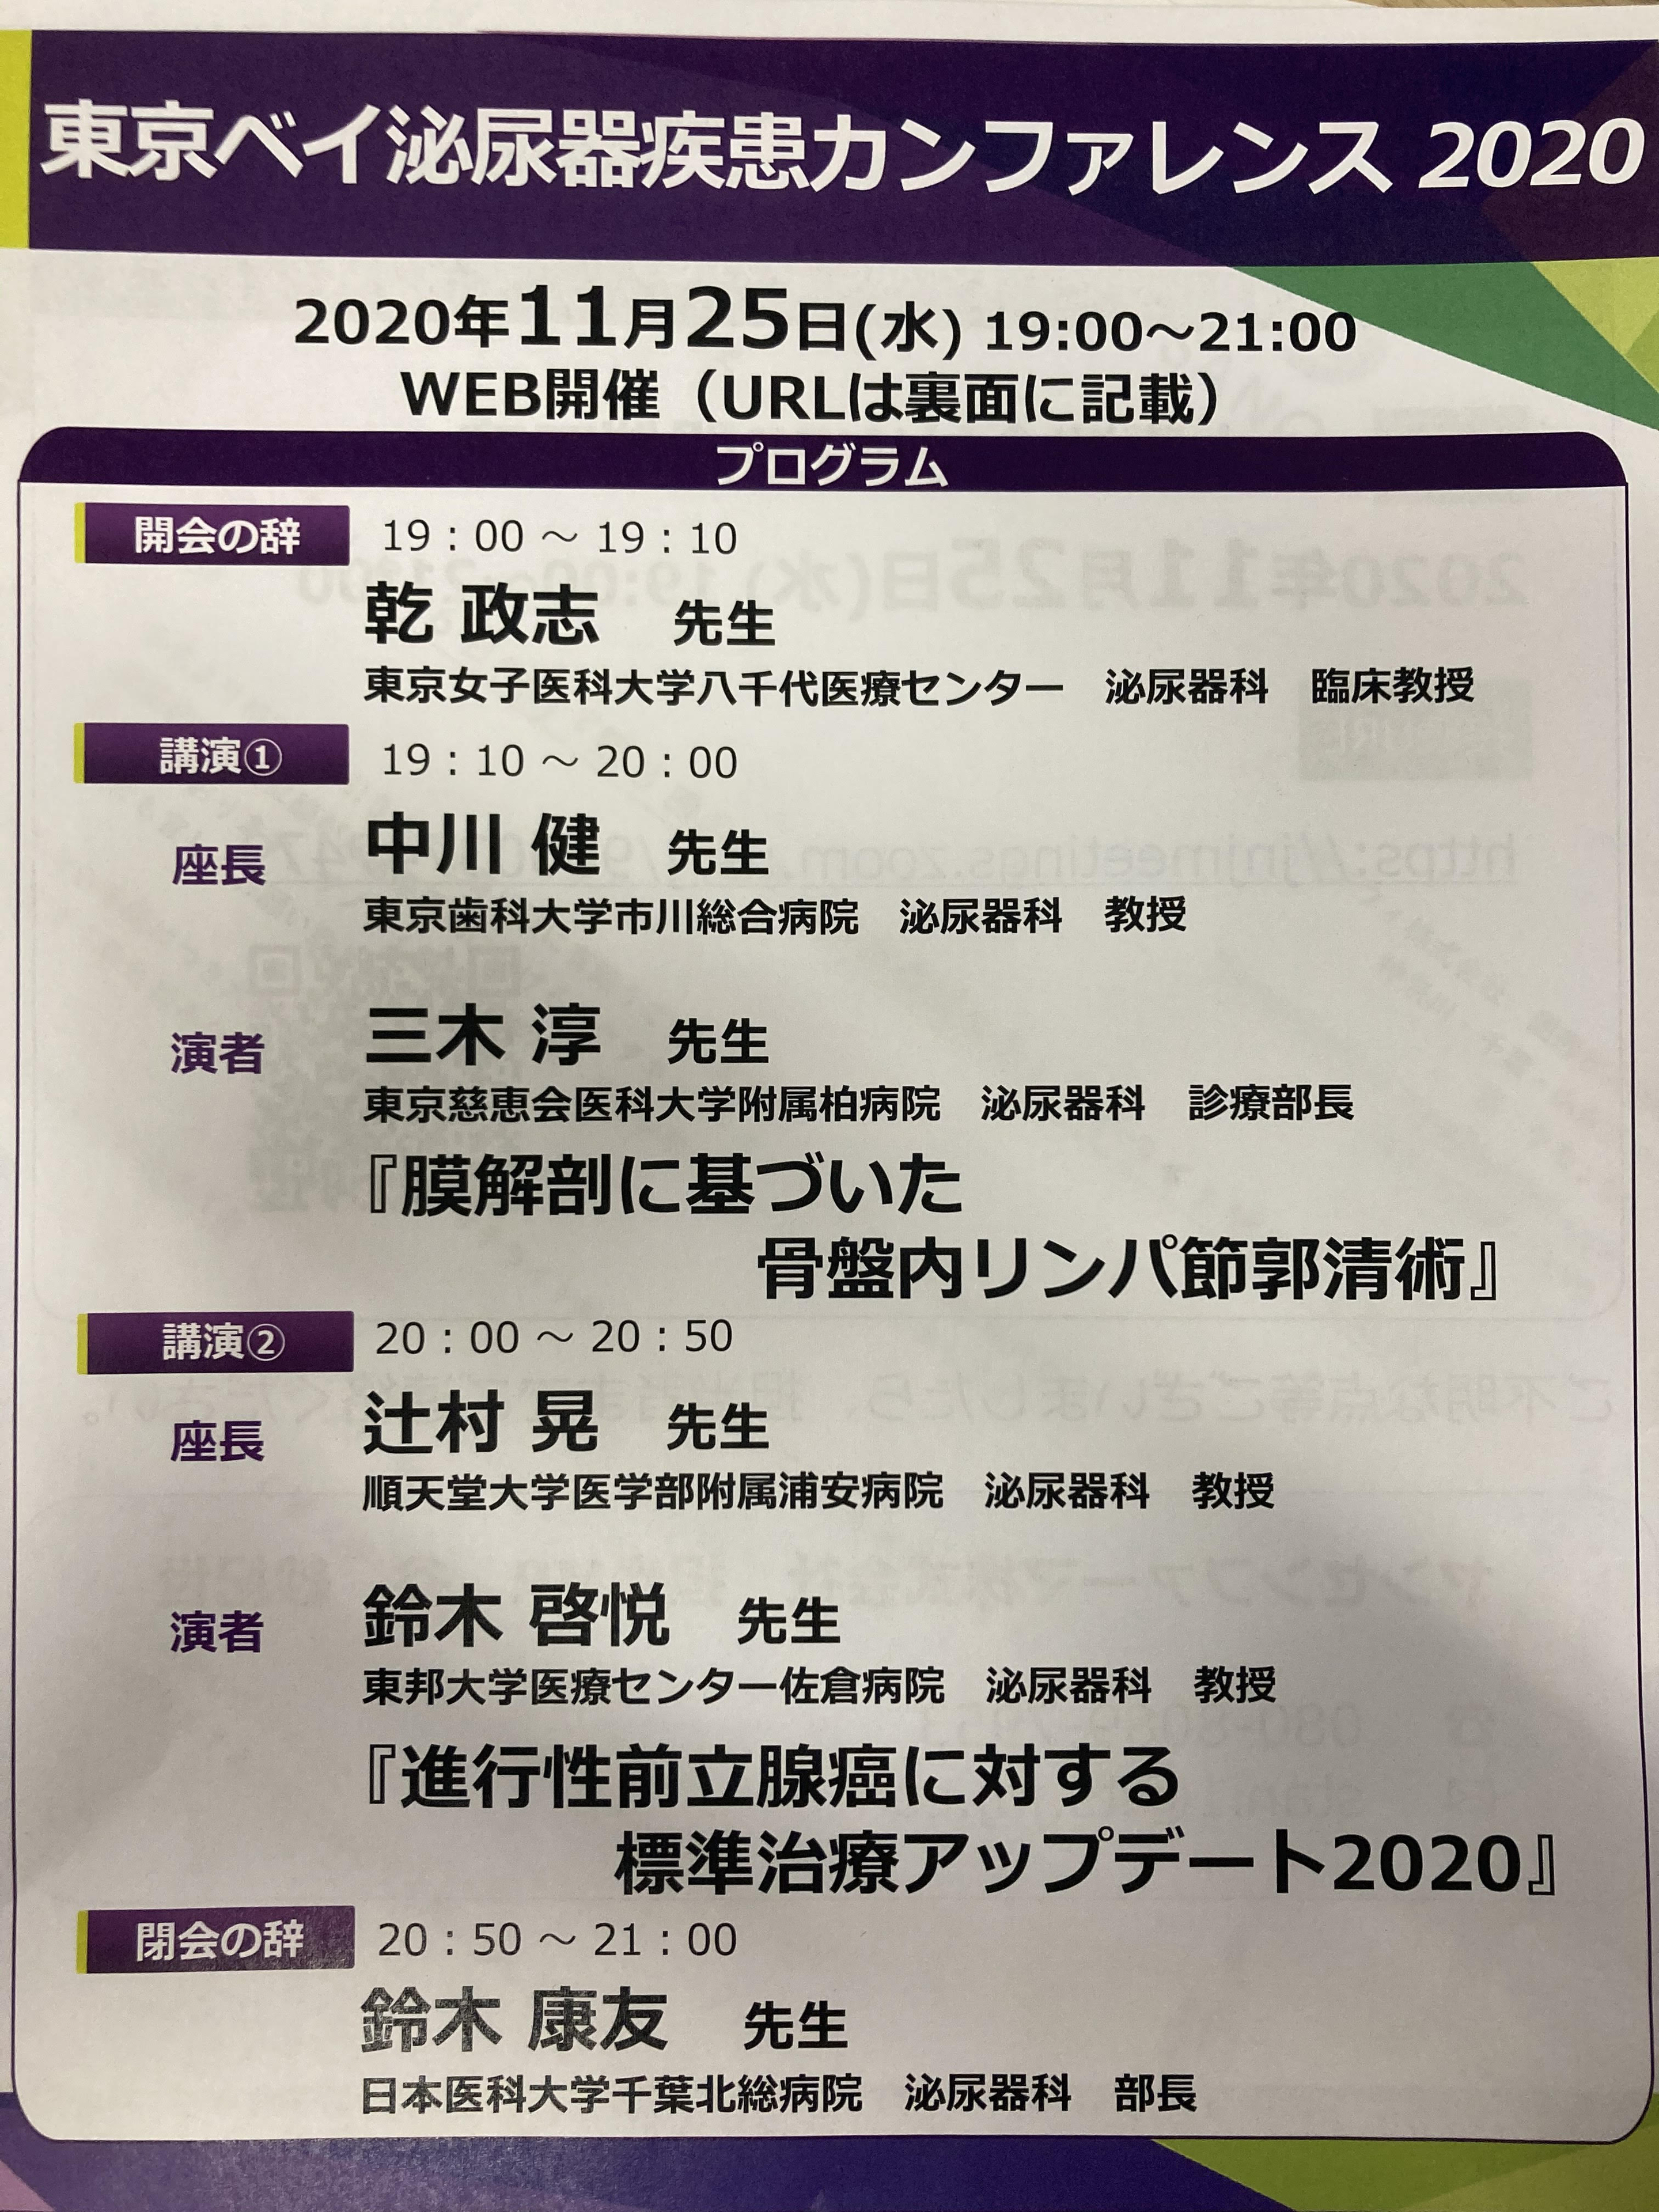 tokyobay conference 2020